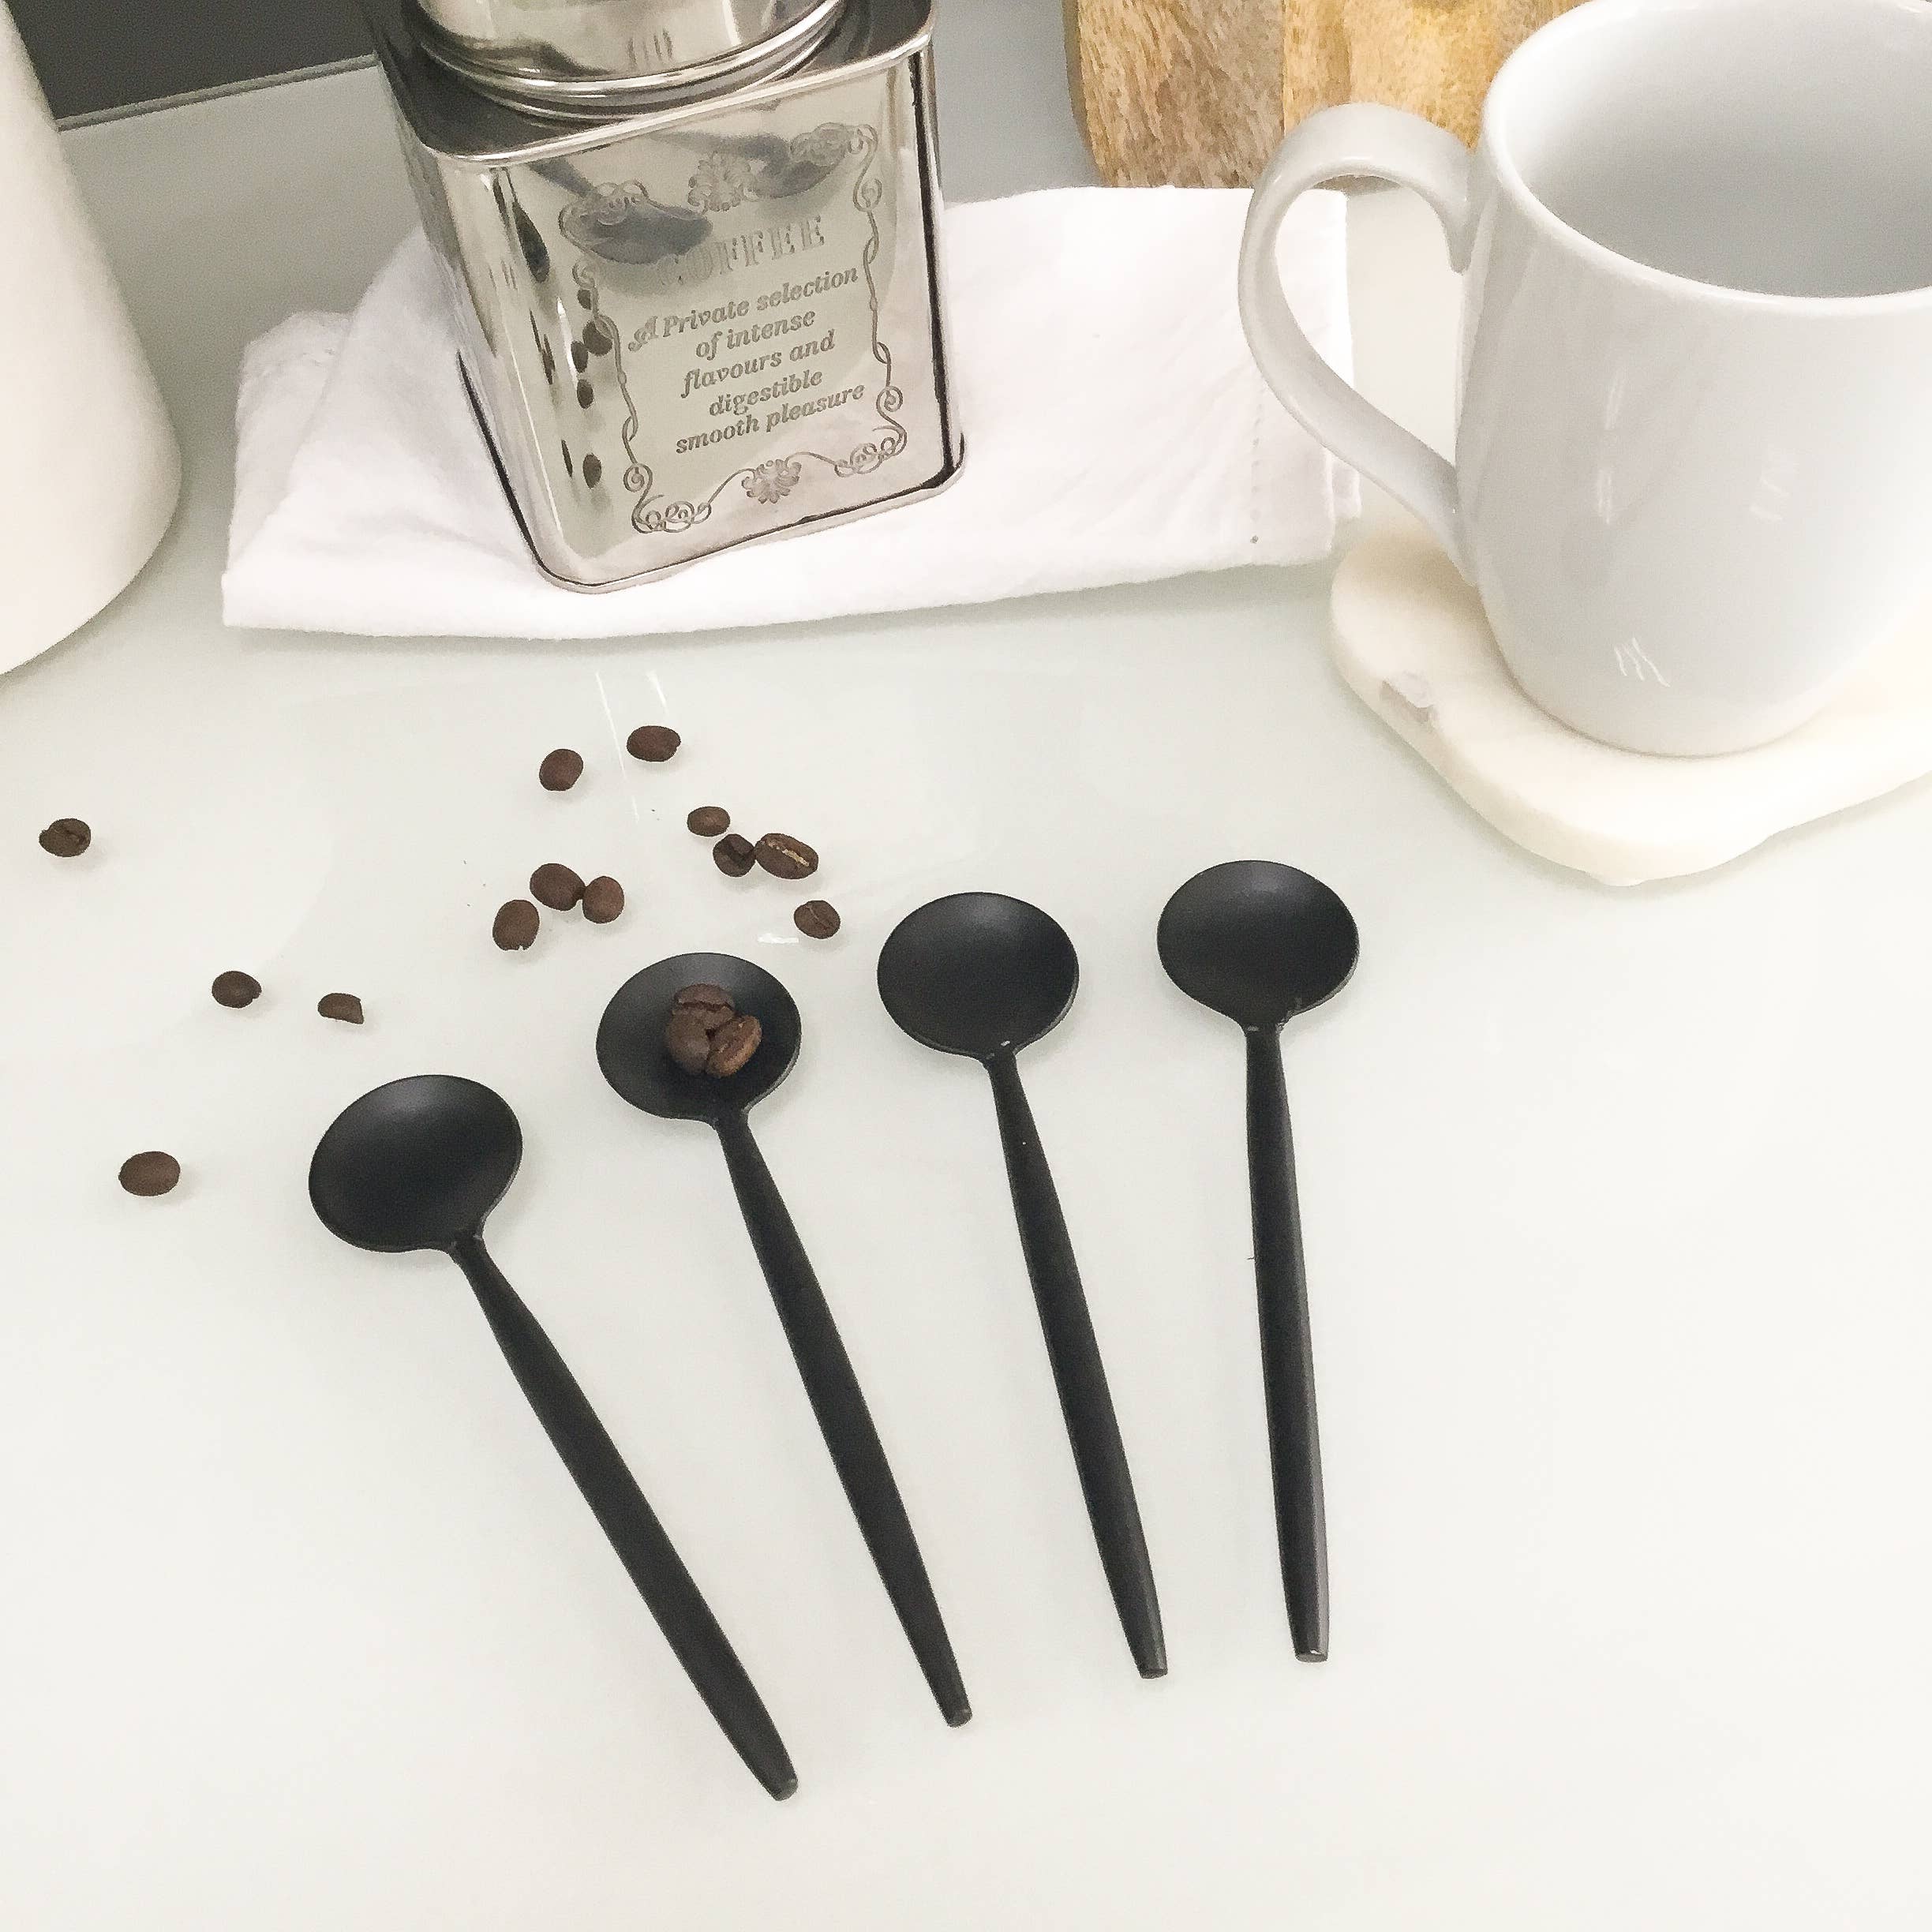 Sleek Black Coffee Spoons